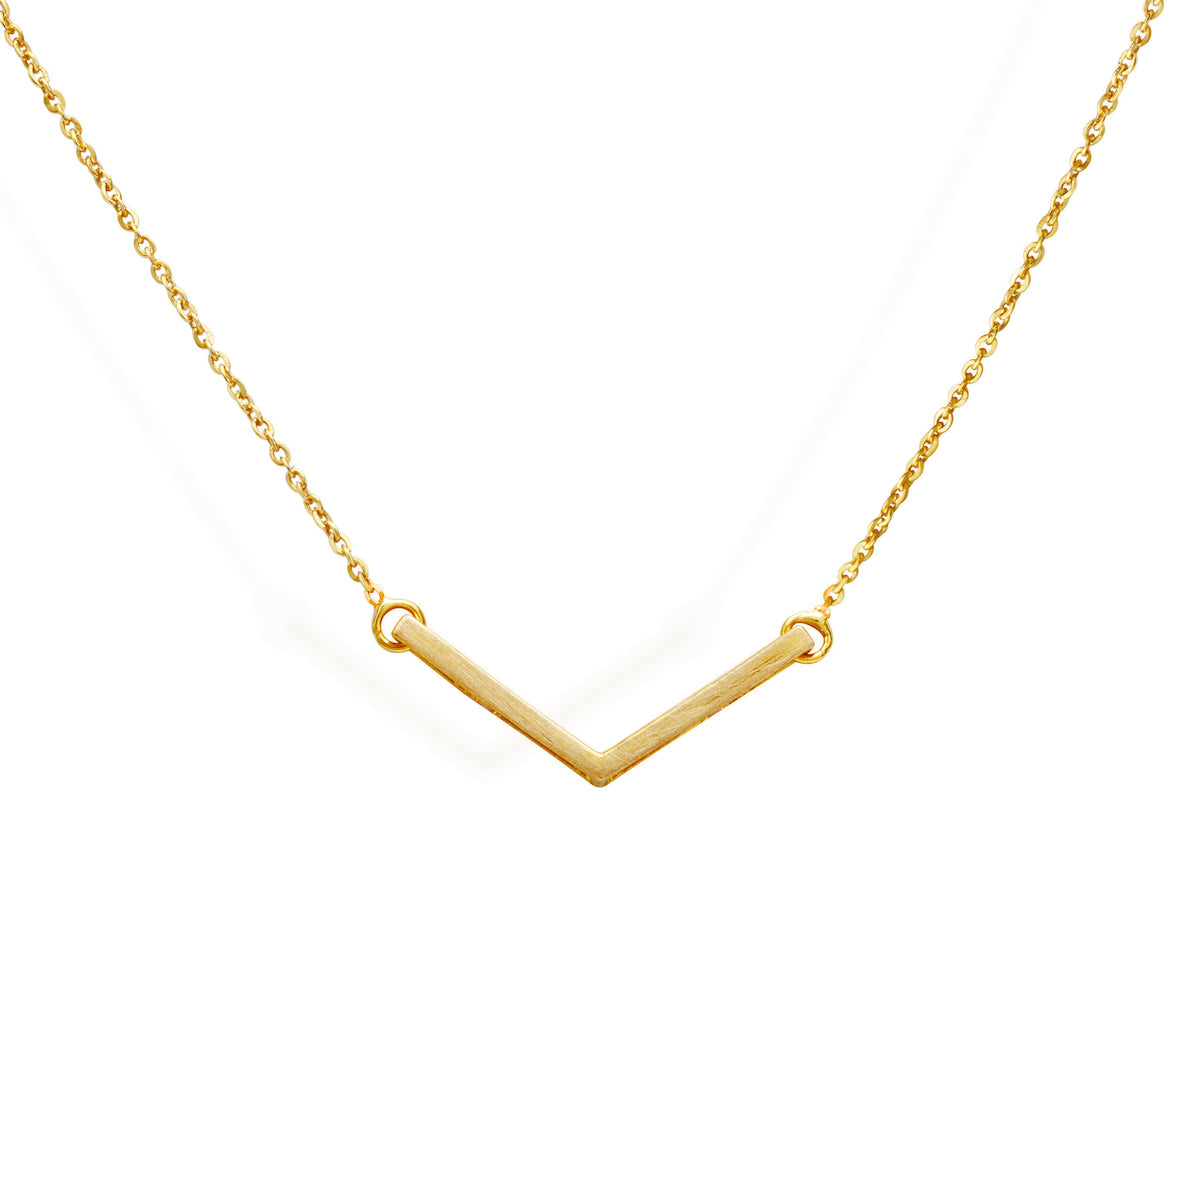 Necklace of type sautoir in yellow gold 14k (585 thousan… | Drouot.com